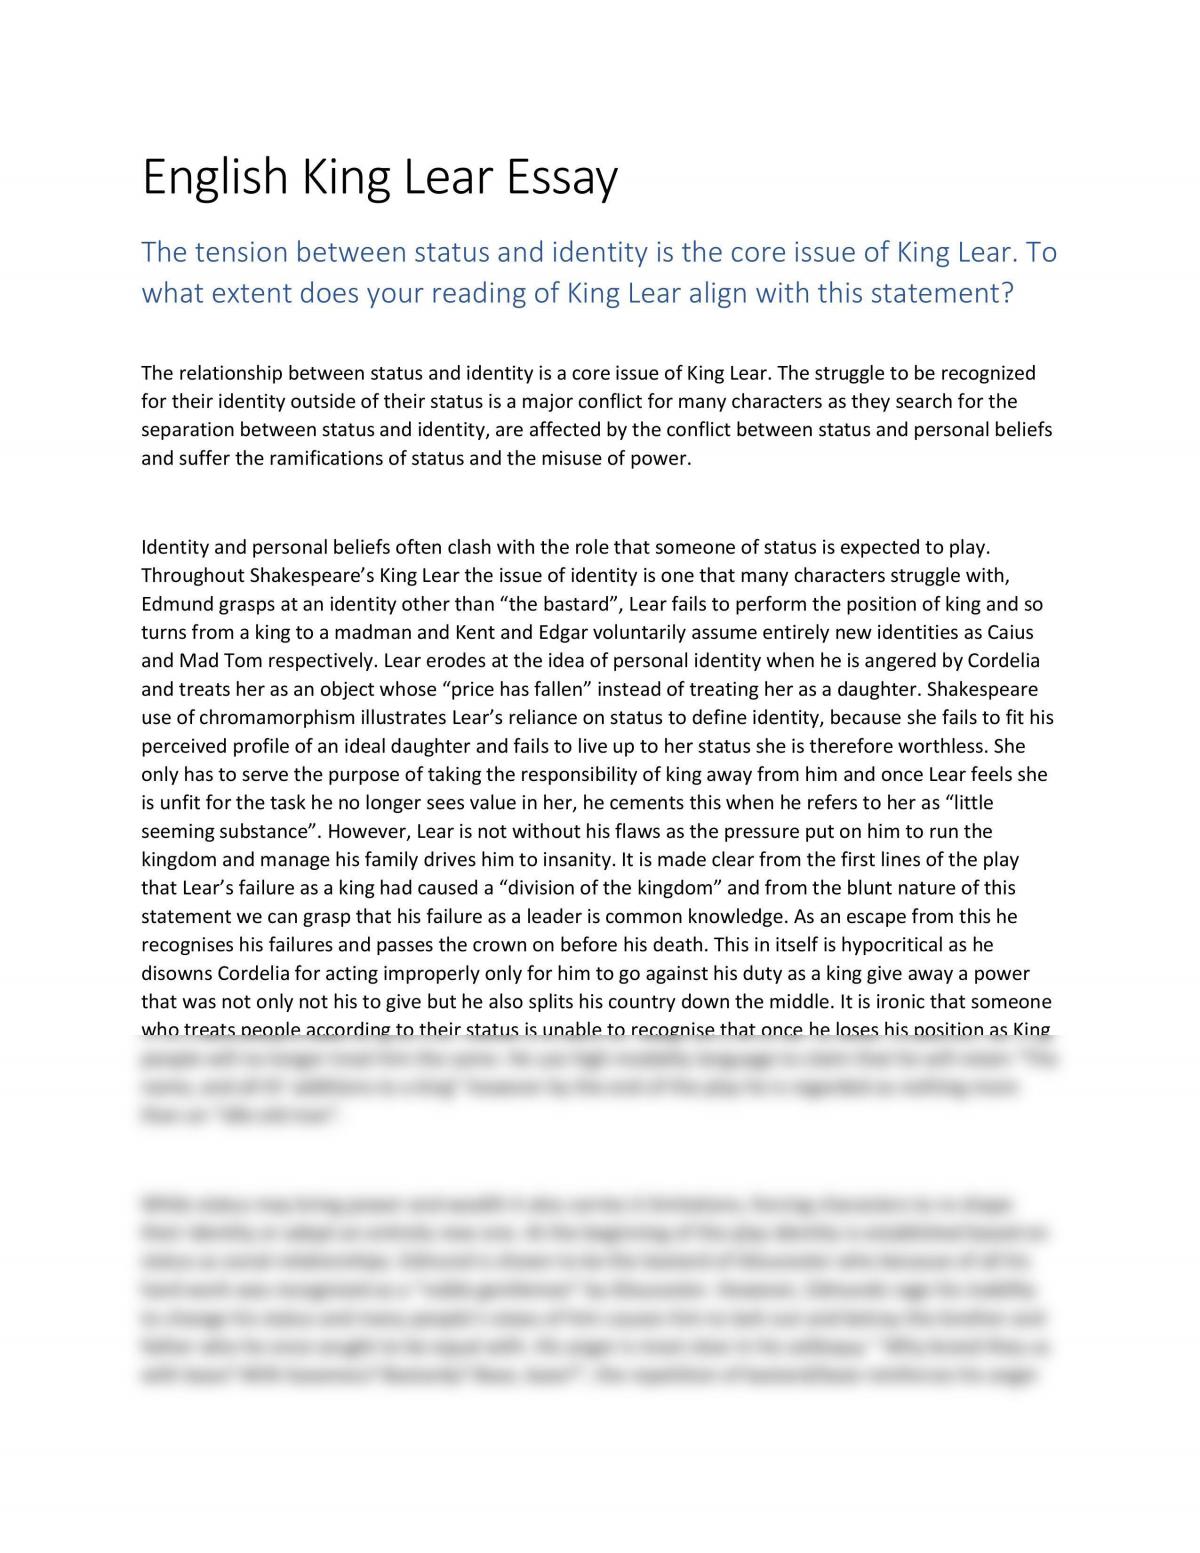 cruelty in king lear essay